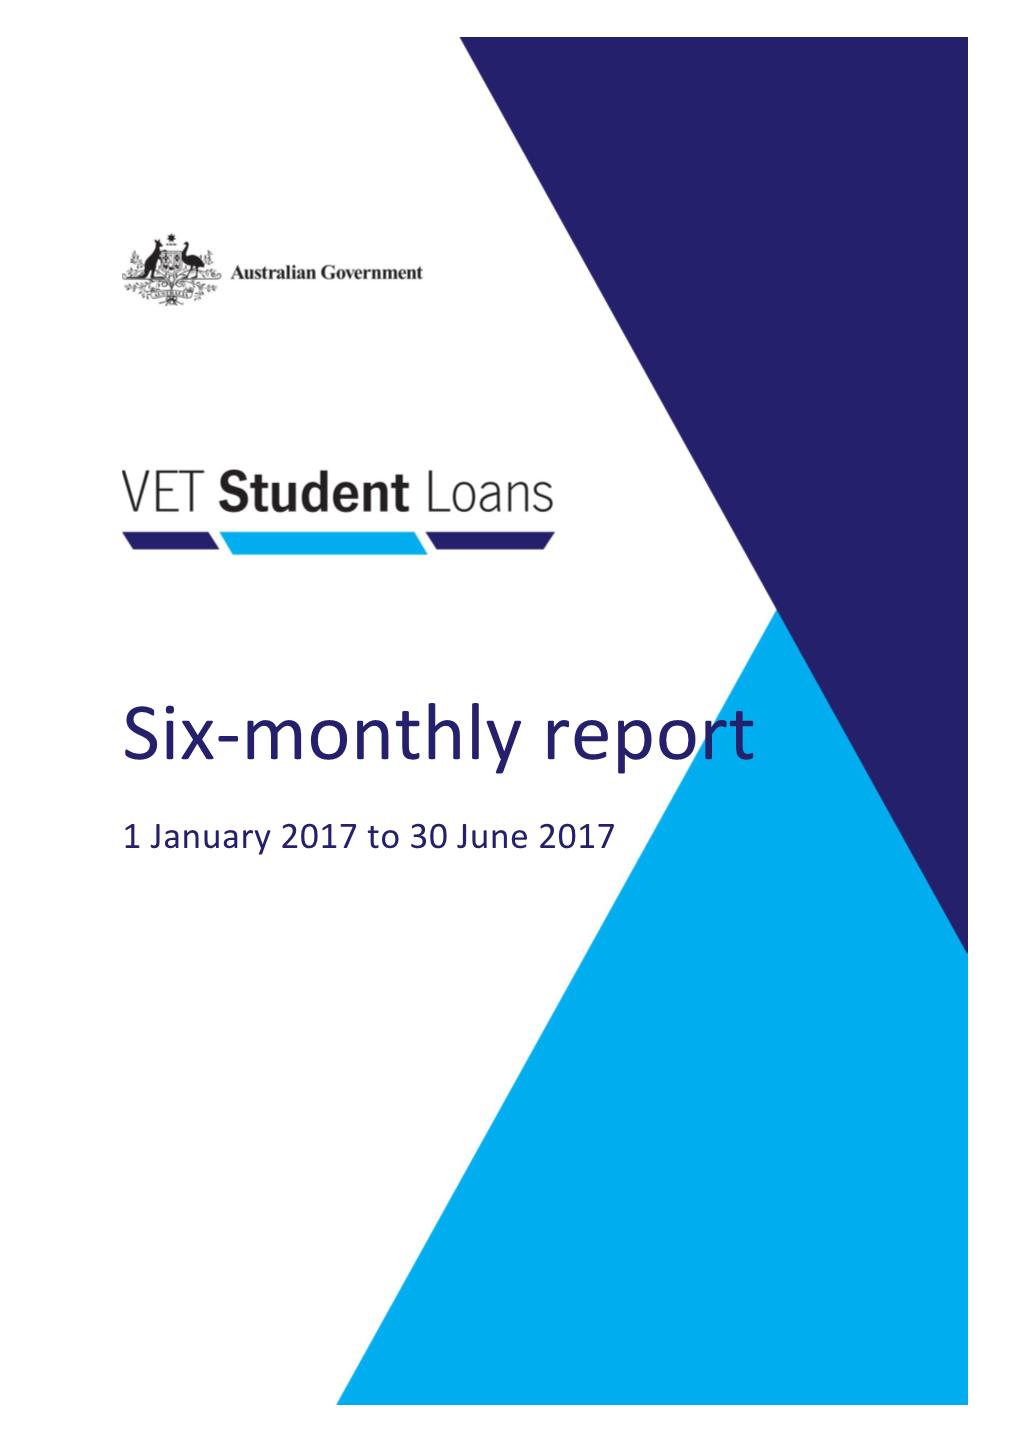 VET Student Loans